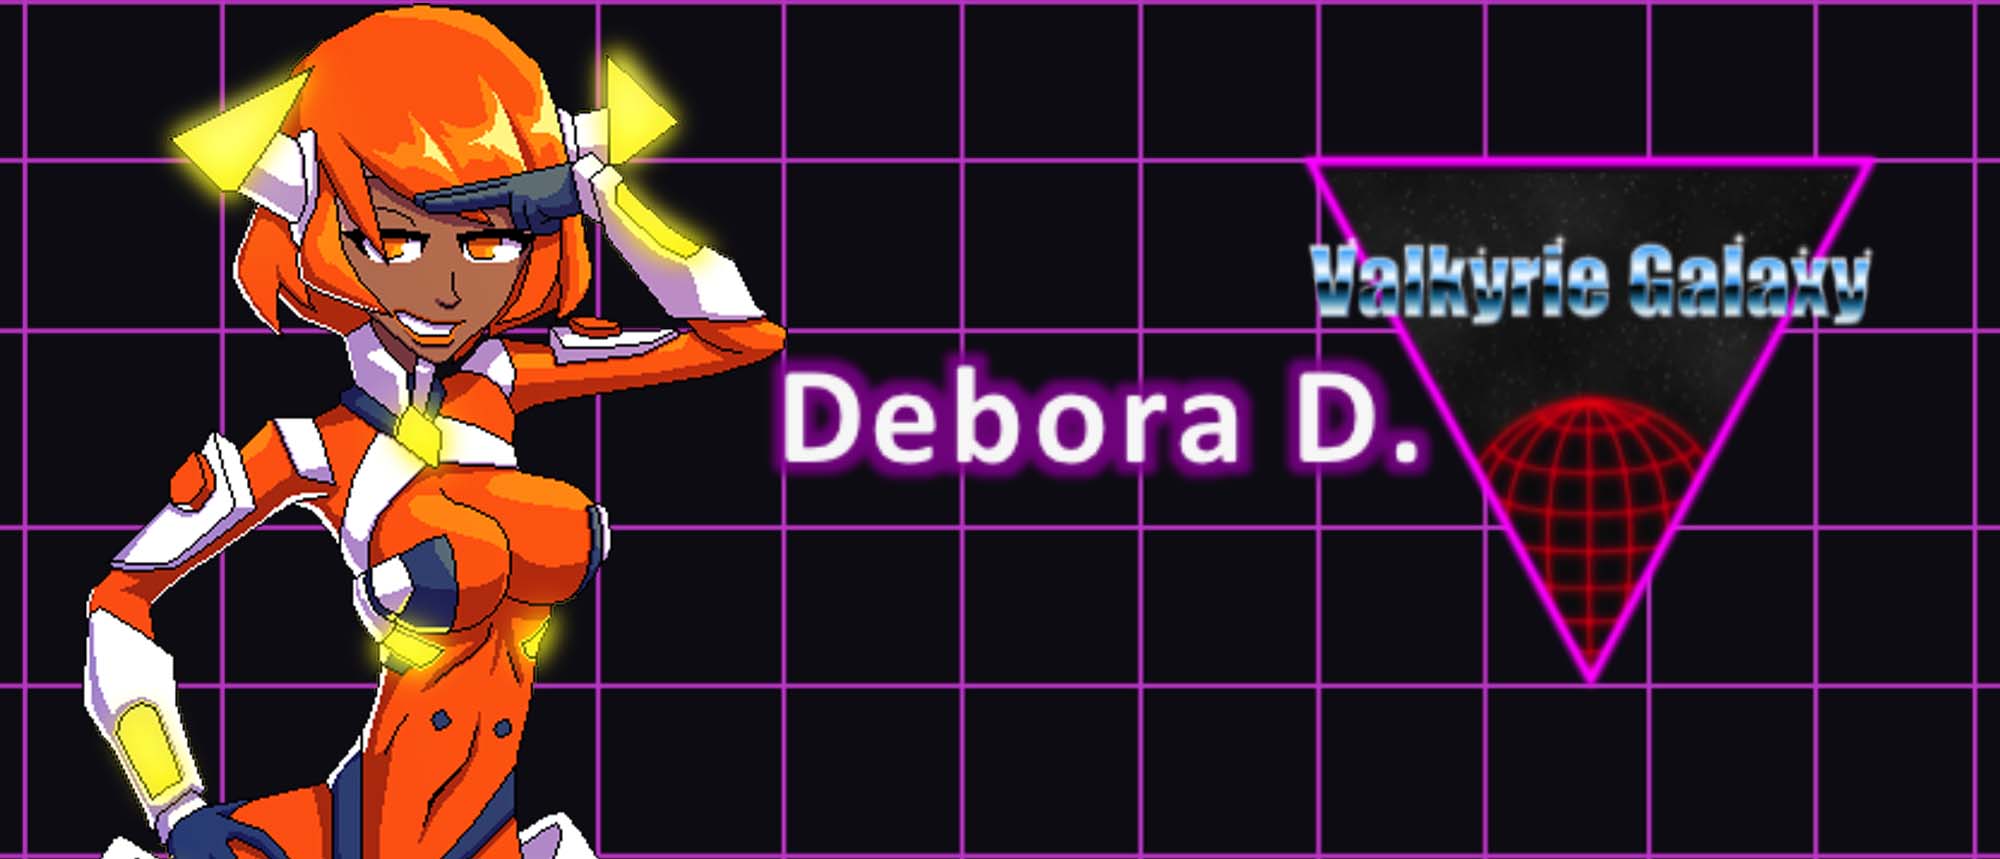 Debora-D-closeup-valkyrie-galaxy